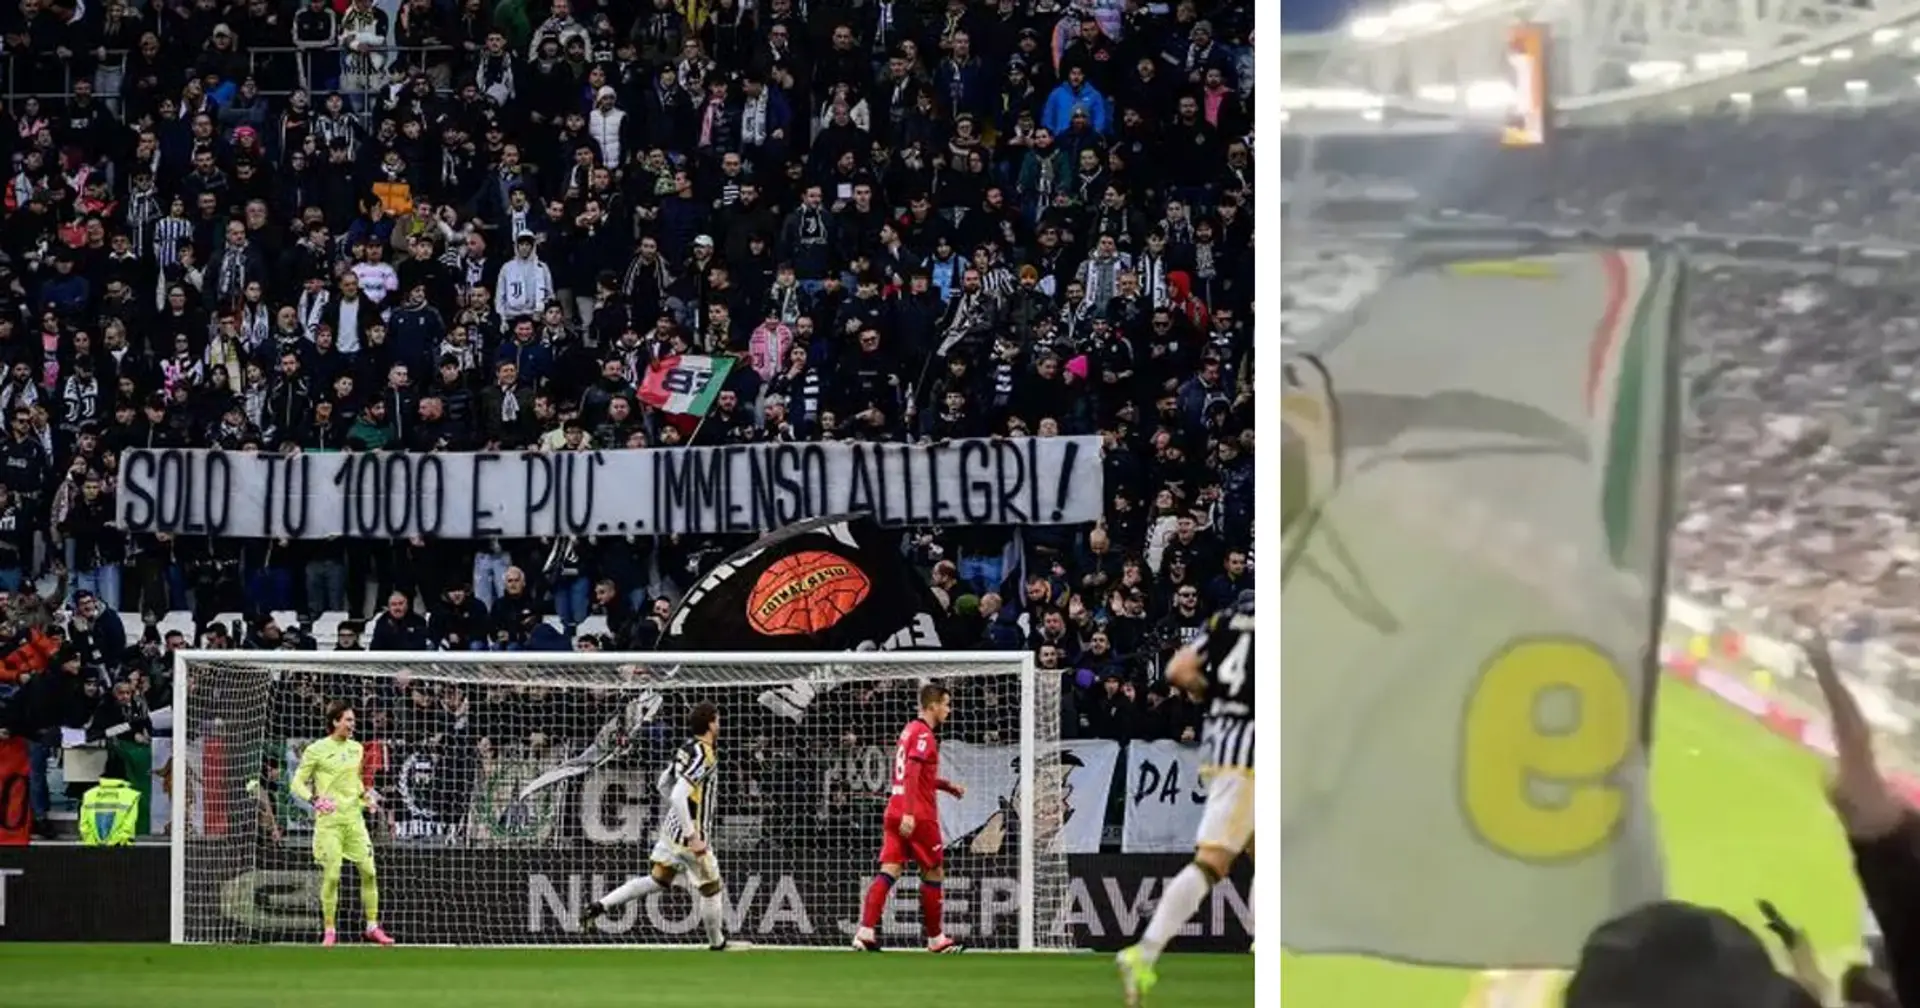 Perché la Sud della Juventus insultava gli altri tifosi allo stadium? Il retroscena del match con l'Atalanta